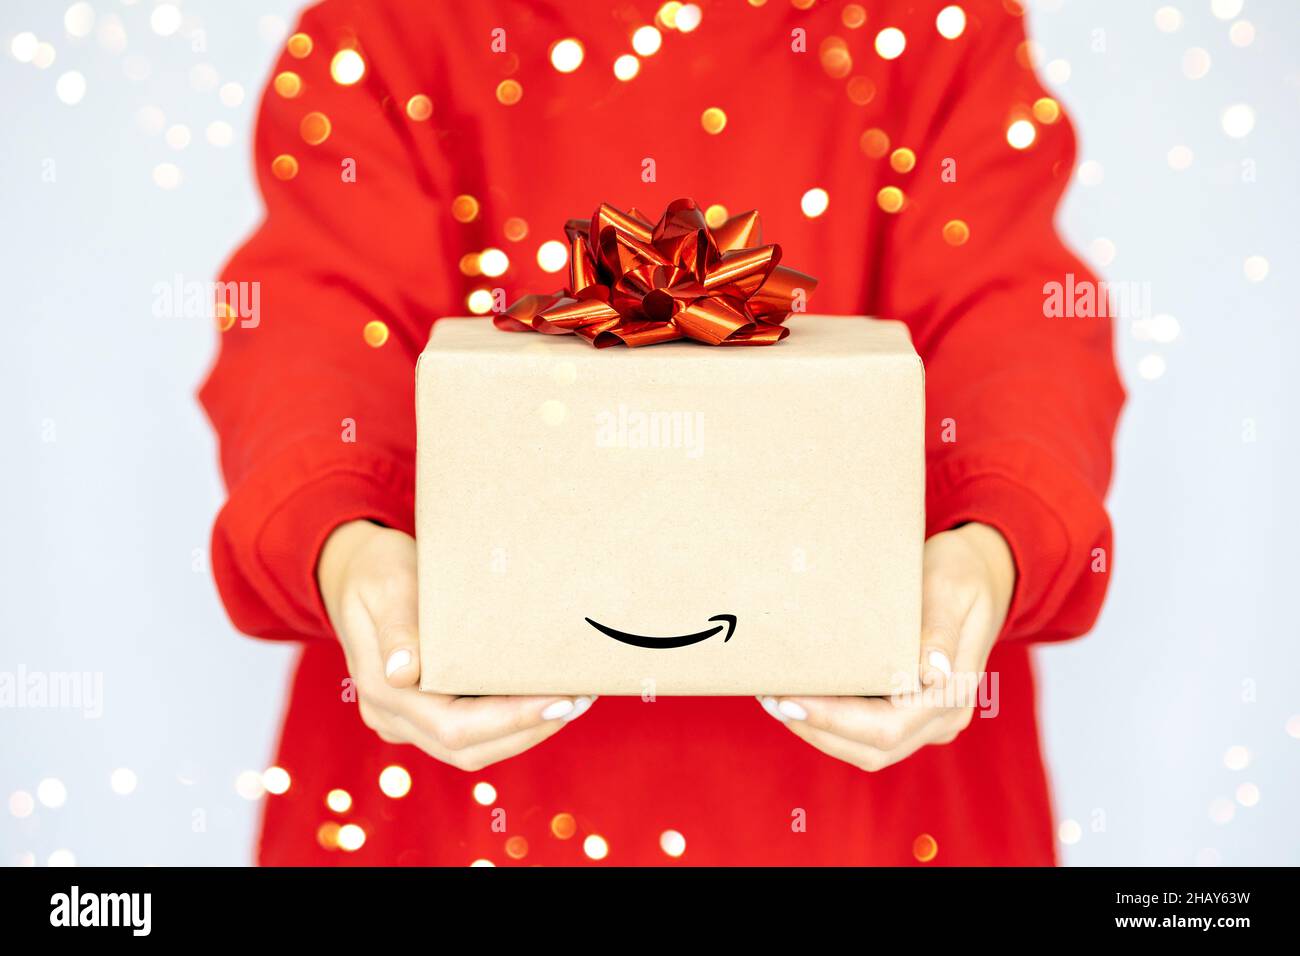 Livraison express Amazon.Une jeune femme dans un sweat-shirt rouge tient  une boîte en carton avec un noeud rouge.Vente d'achats en ligne Photo Stock  - Alamy